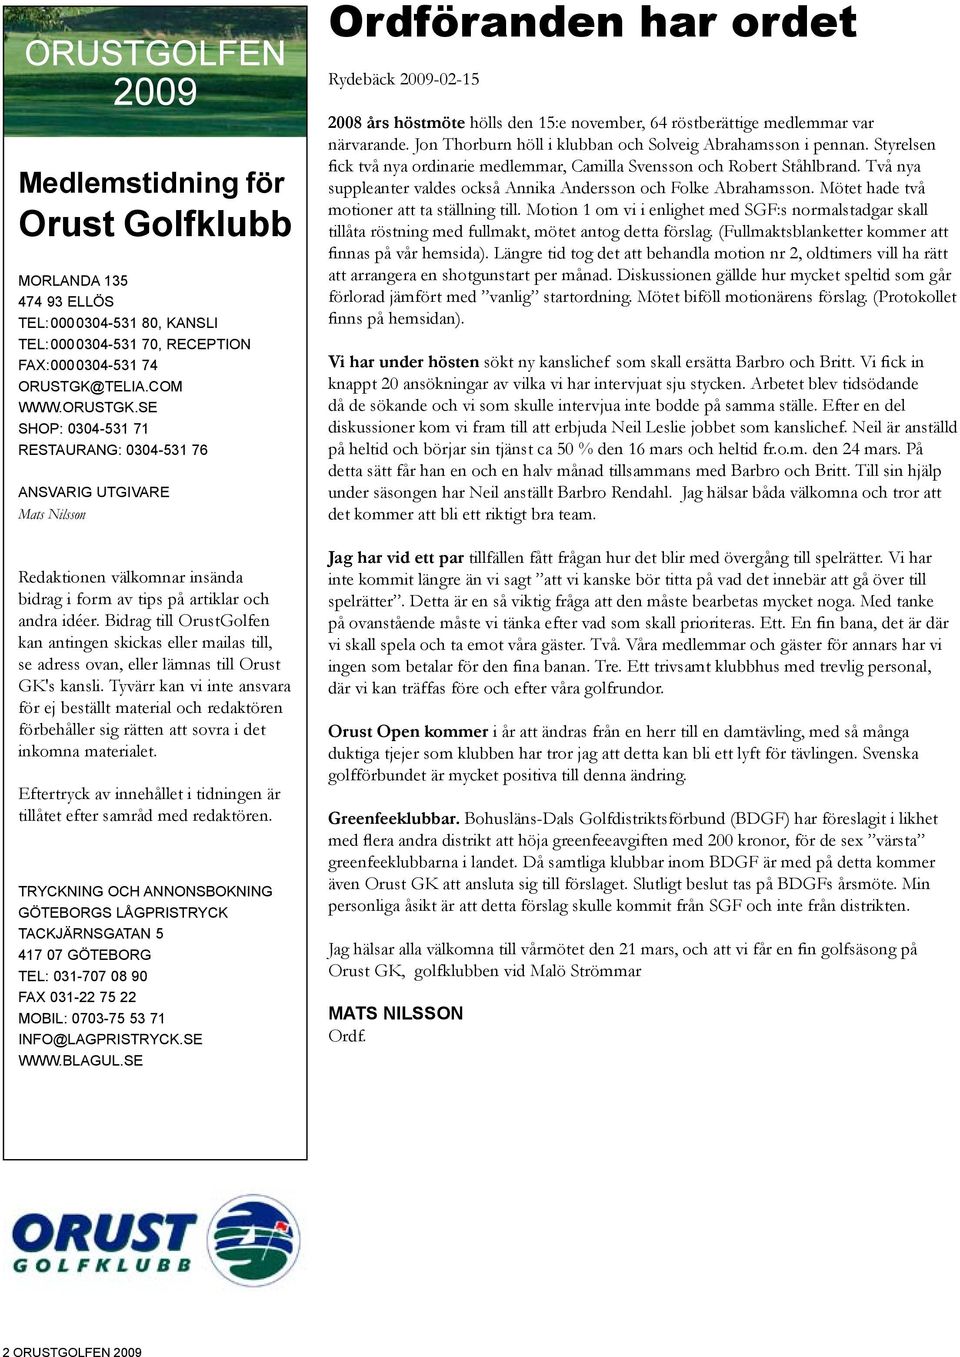 Bidrag till OrustGolfen kan antingen skickas eller mailas till, se adress ovan, eller lämnas till Orust GK's kansli.